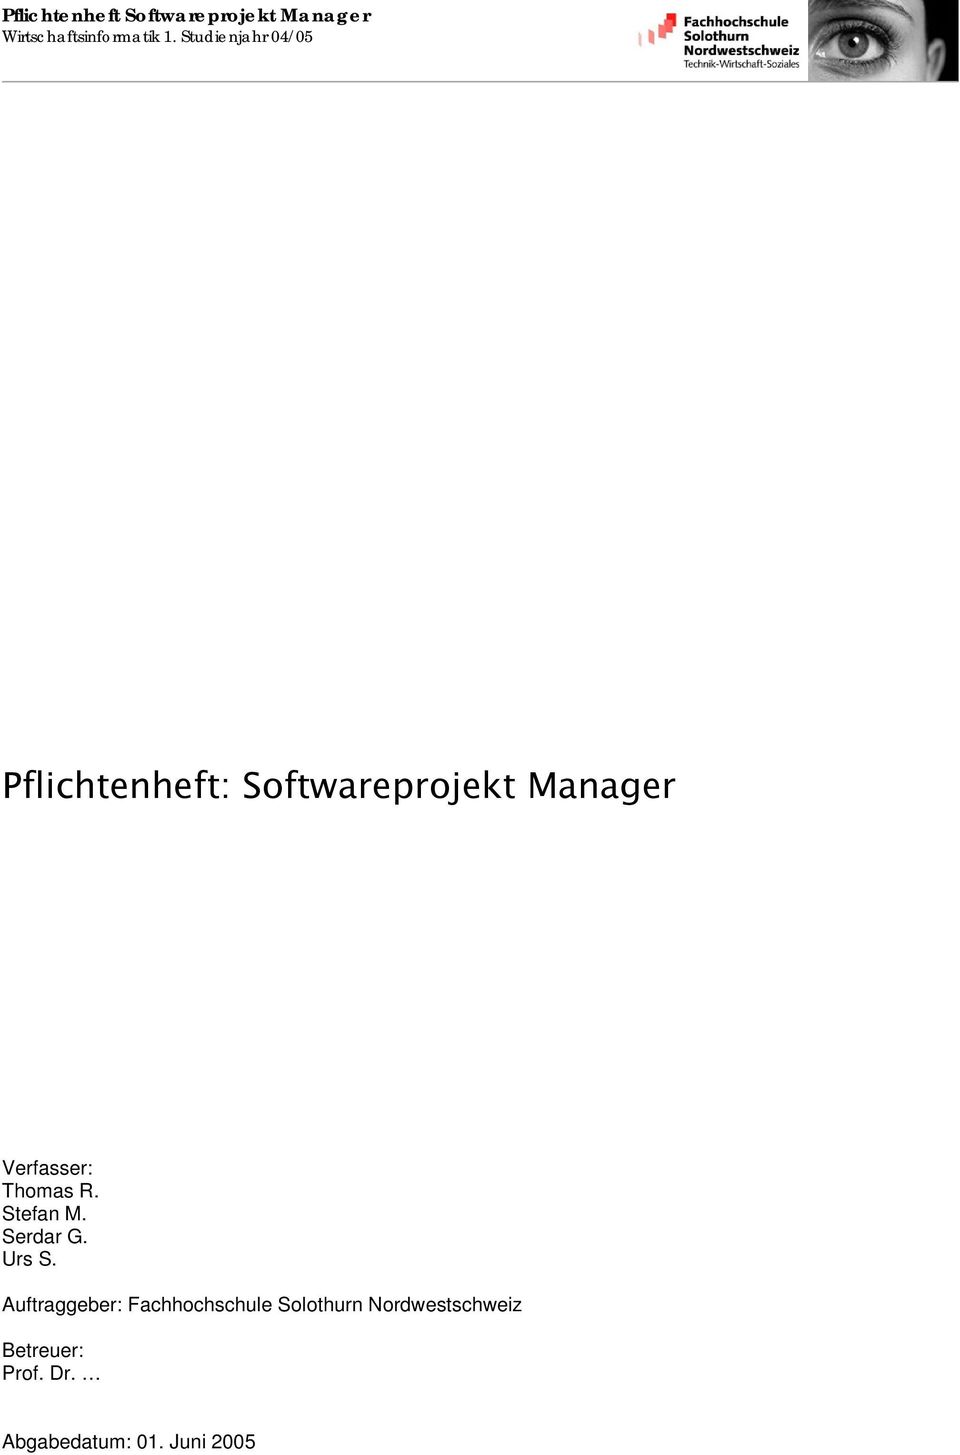 Pflichtenheft Softwareprojekt Manager Pdf Kostenfreier Download